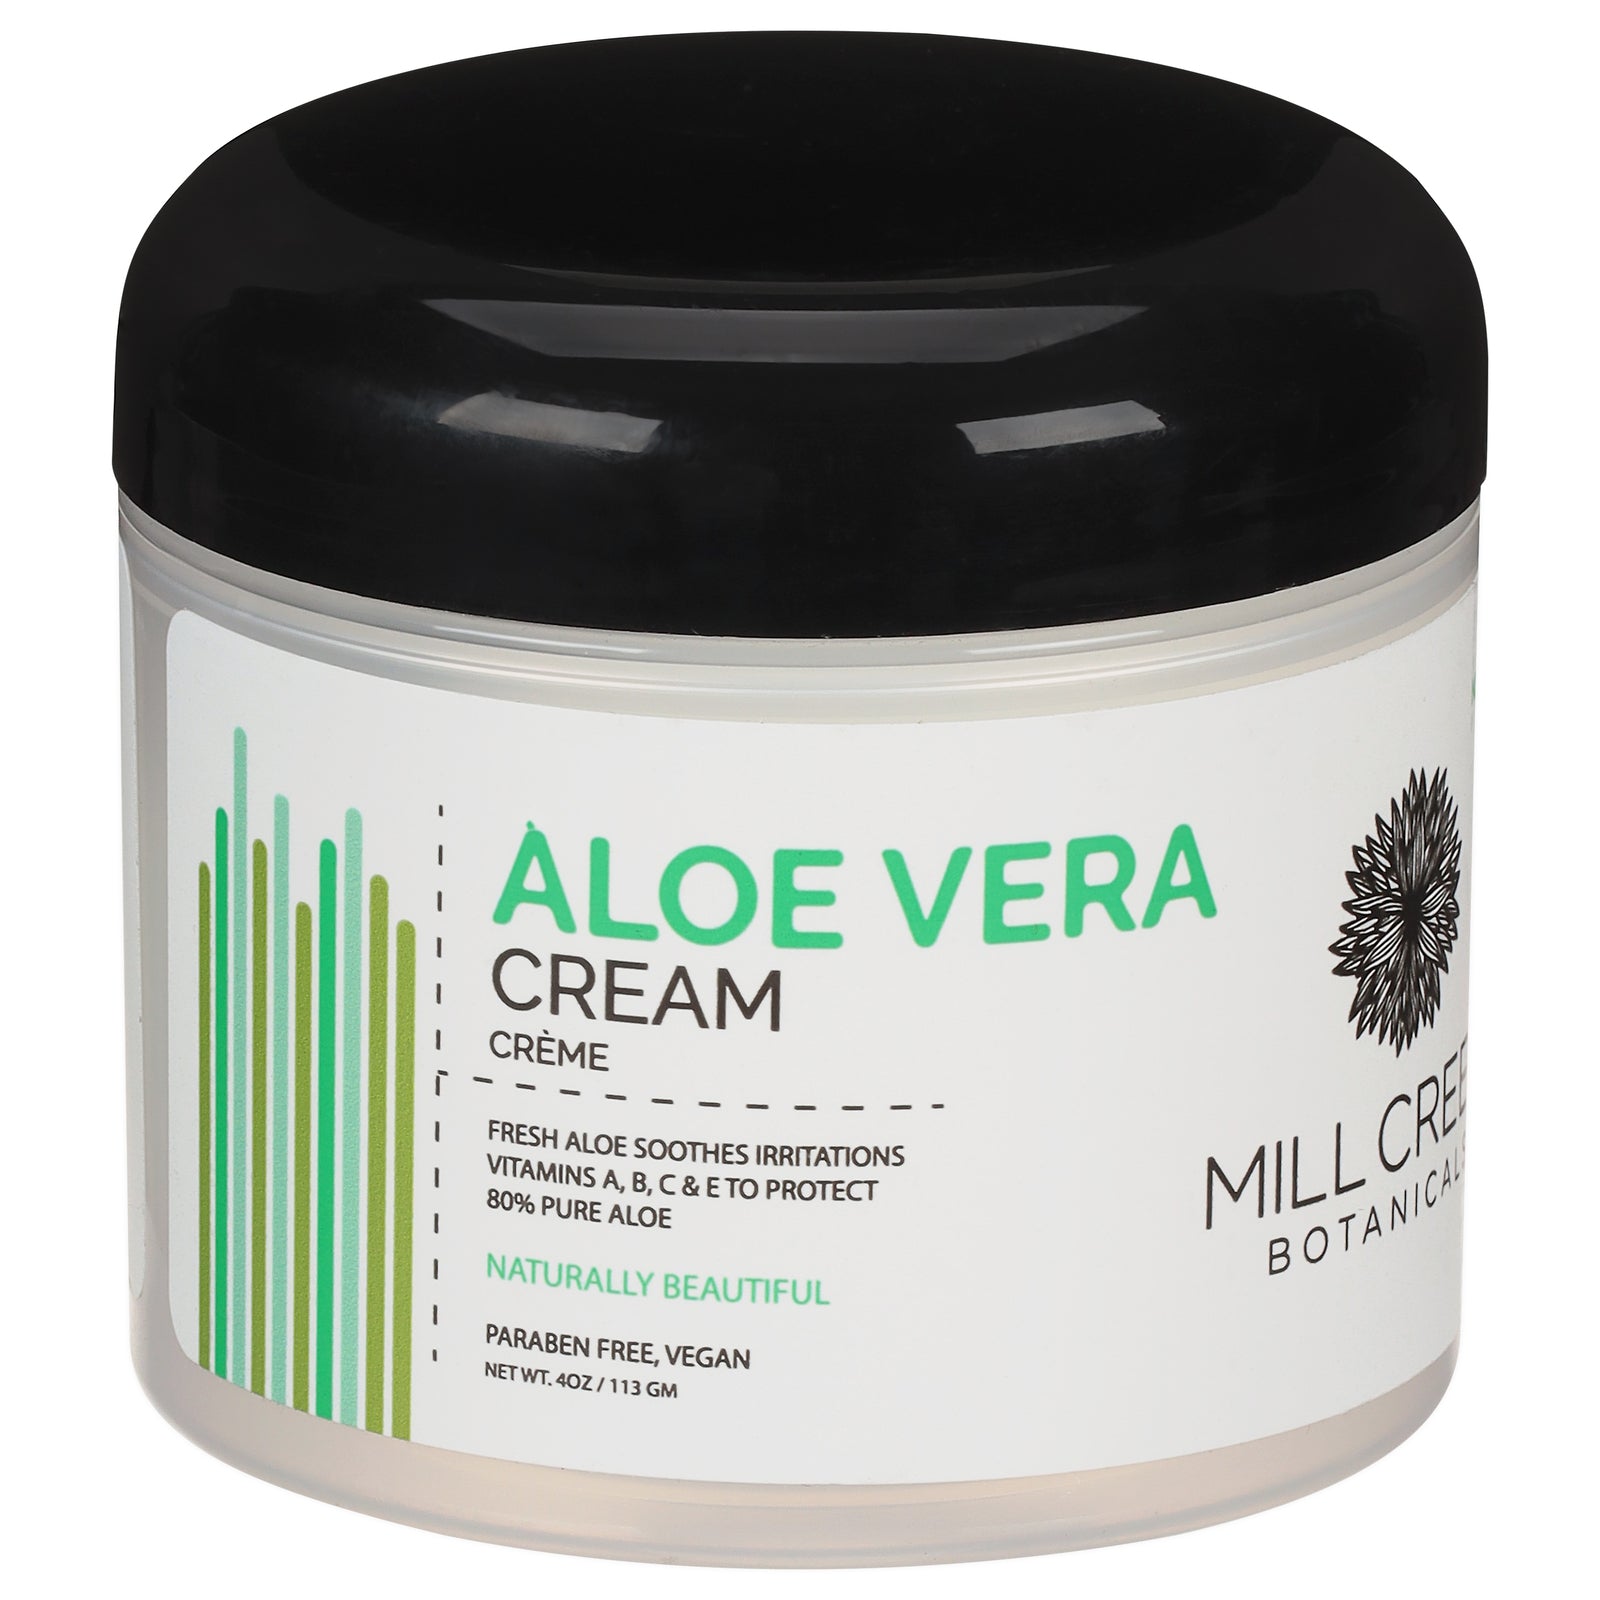 Mill Creek Aloe Vera Cream - 4 Oz